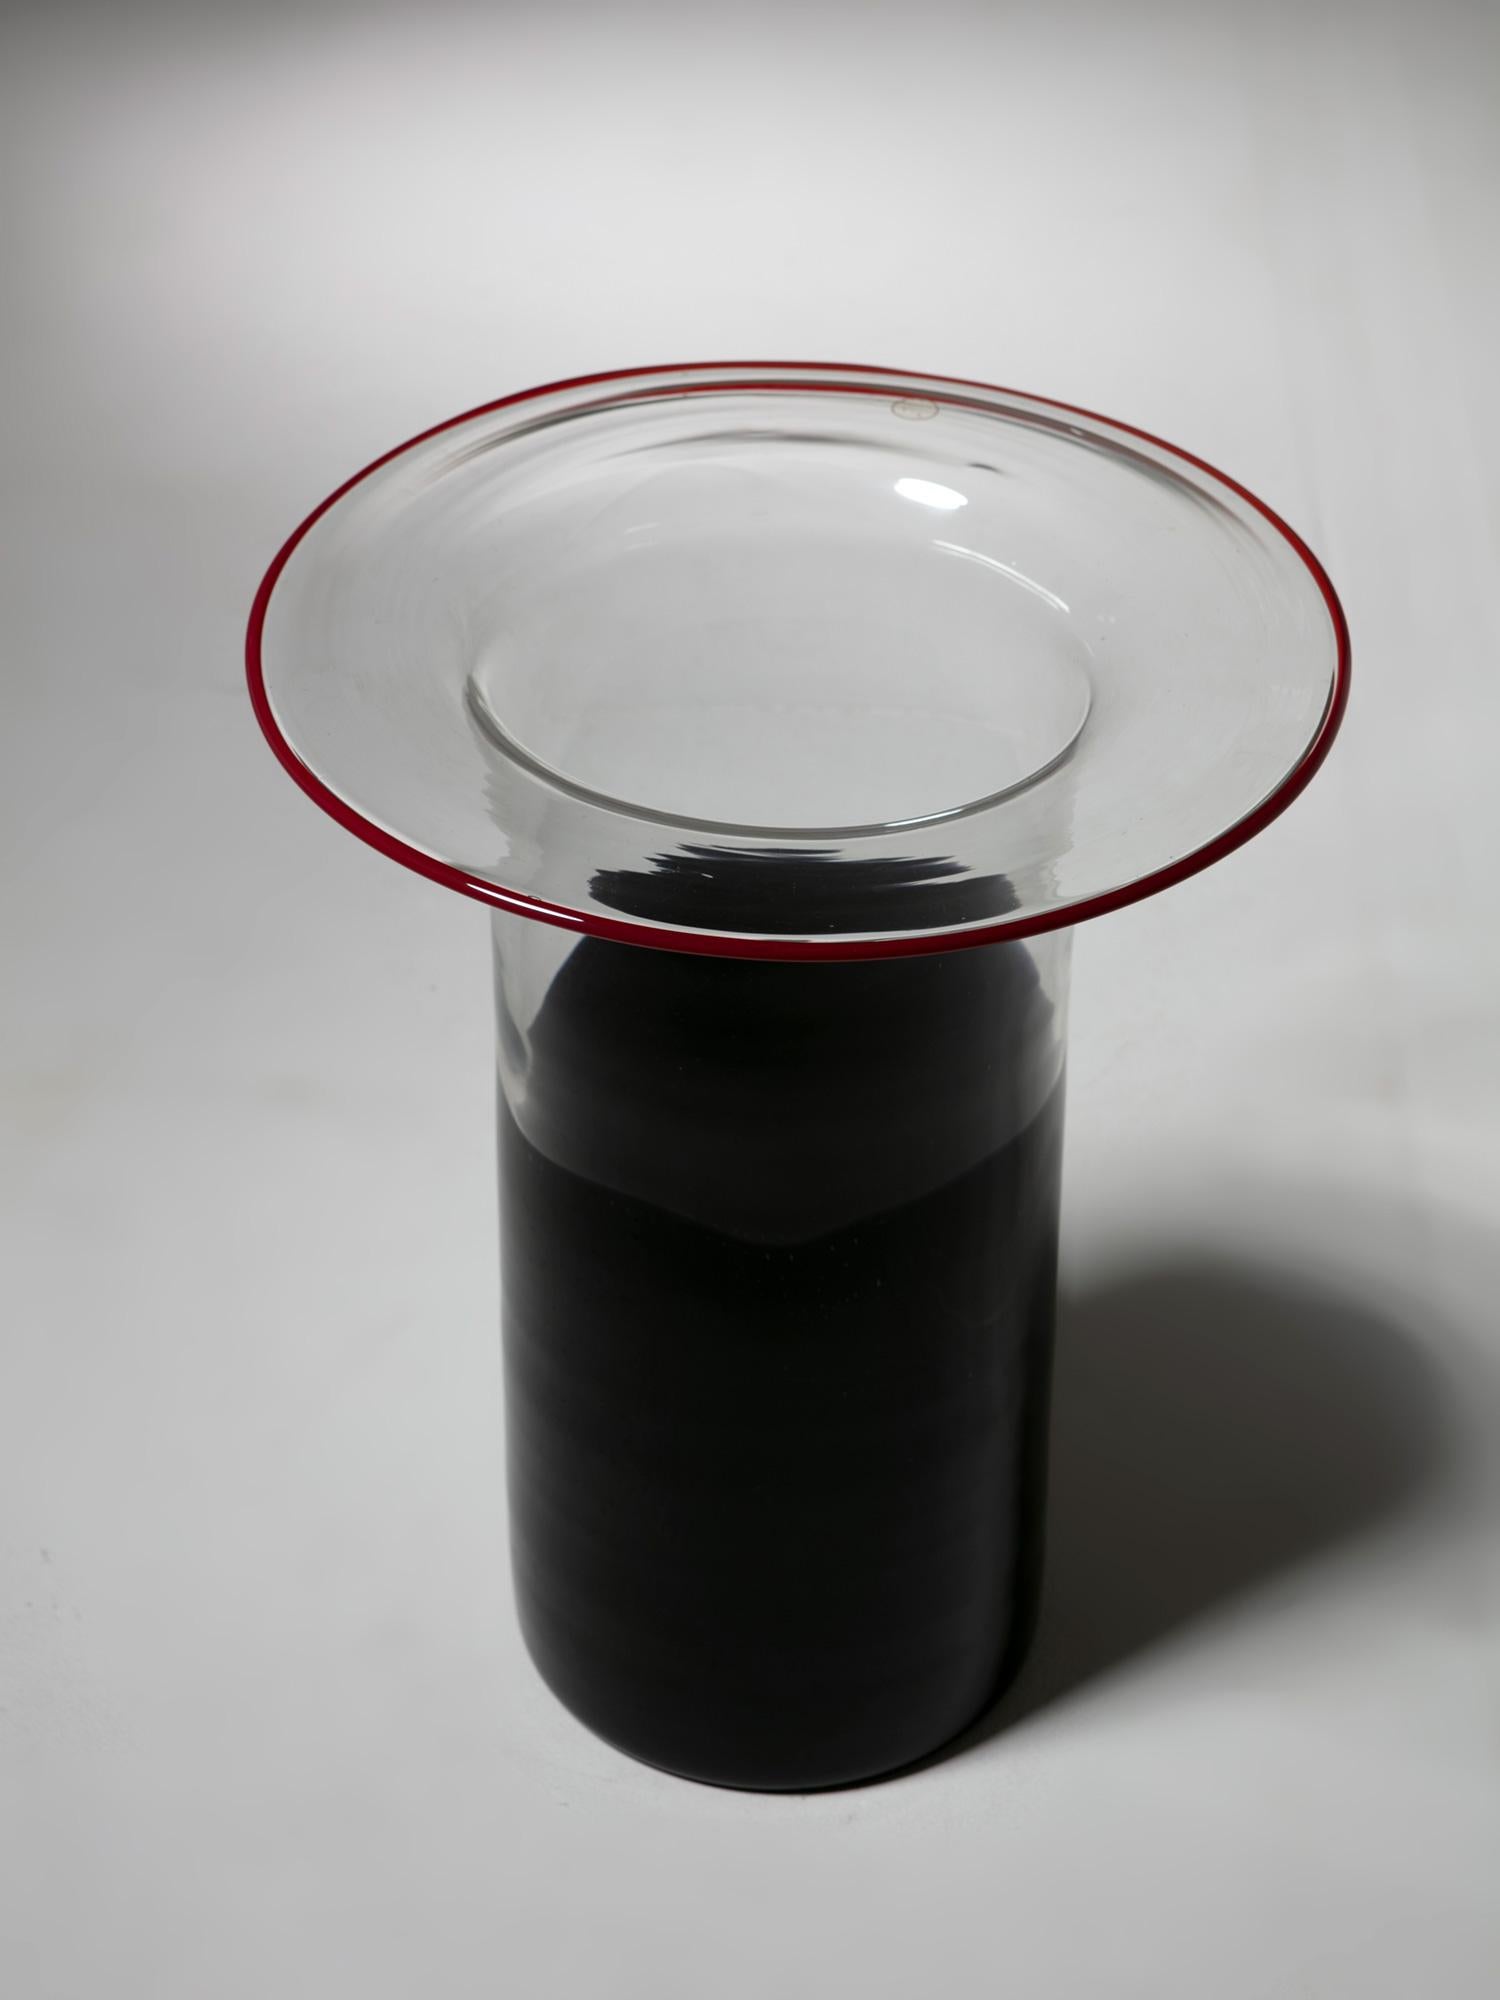 Große Vase / Schirmständer aus Murano-Glas Chiclos von Renato Toso für Leucos.
Dicker schwarzer und kristallener Pokal mit rotem Rand.